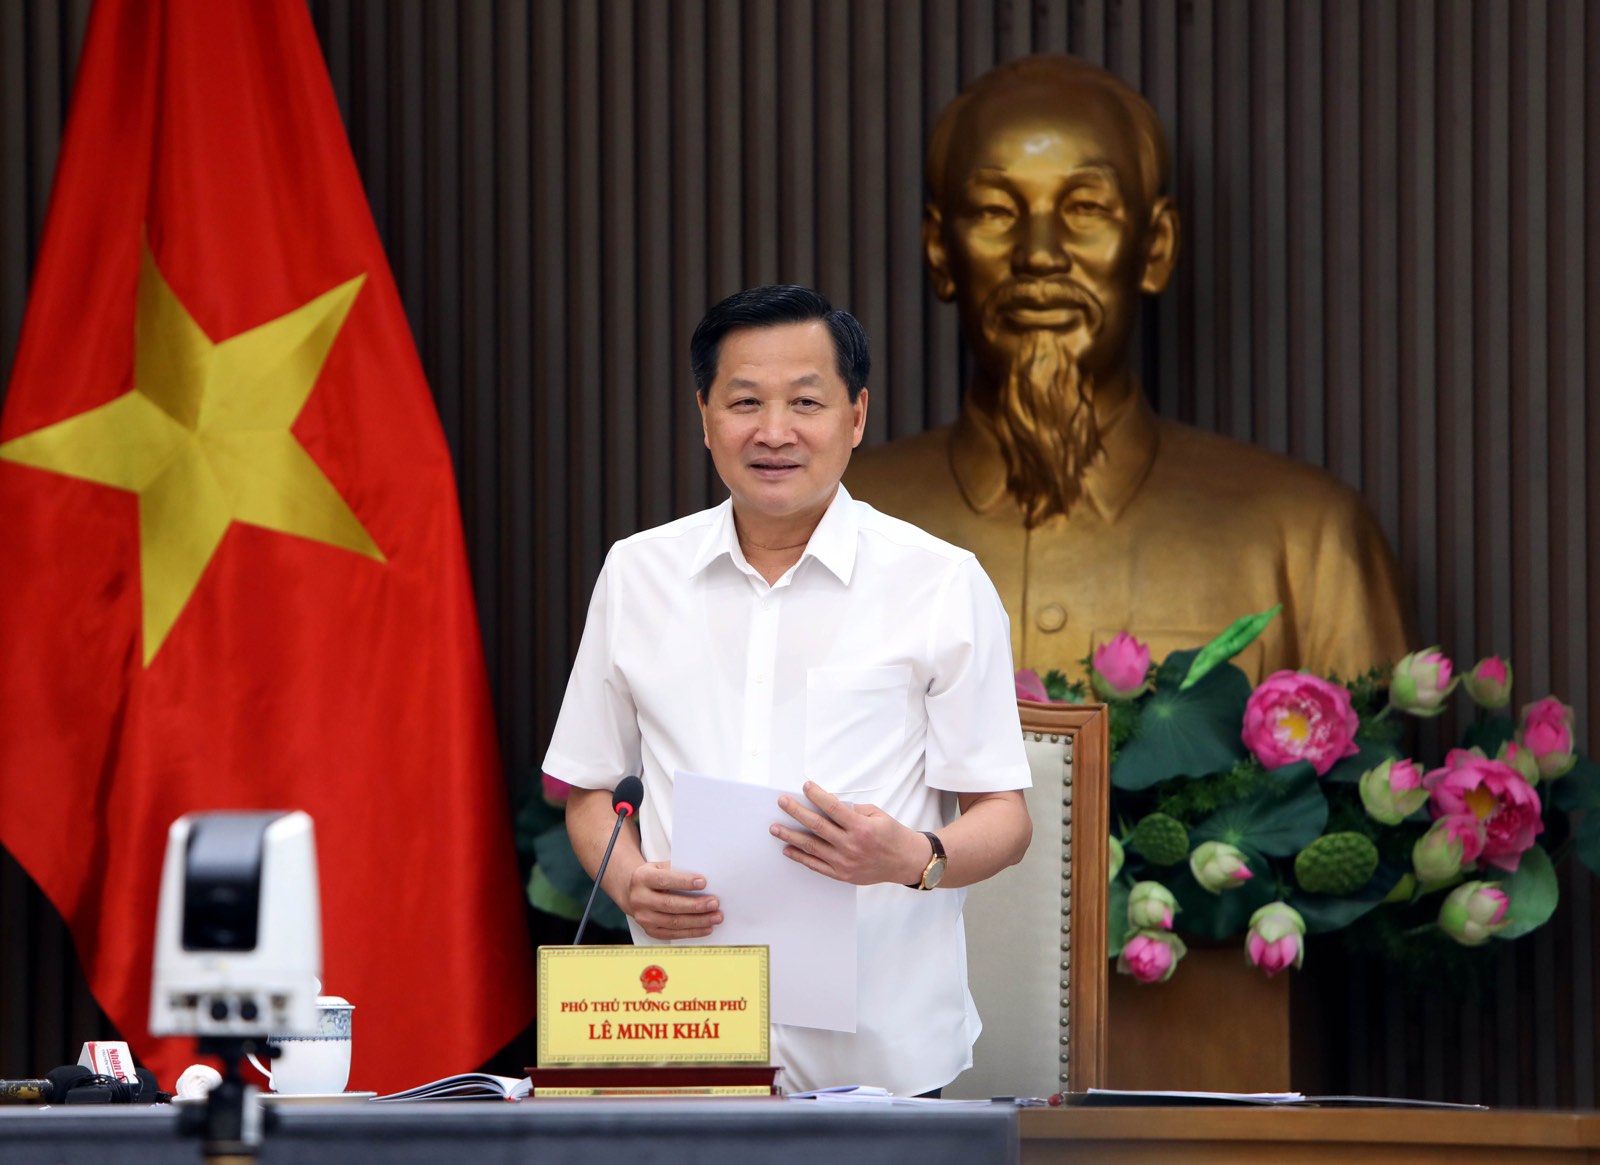 Phó Thủ tướng Lê Minh Khái: Đồng ý chủ trương bổ sung ngành điện hóa, ủng hộ Vinachem tăng vốn điều lệ - Ảnh 2.